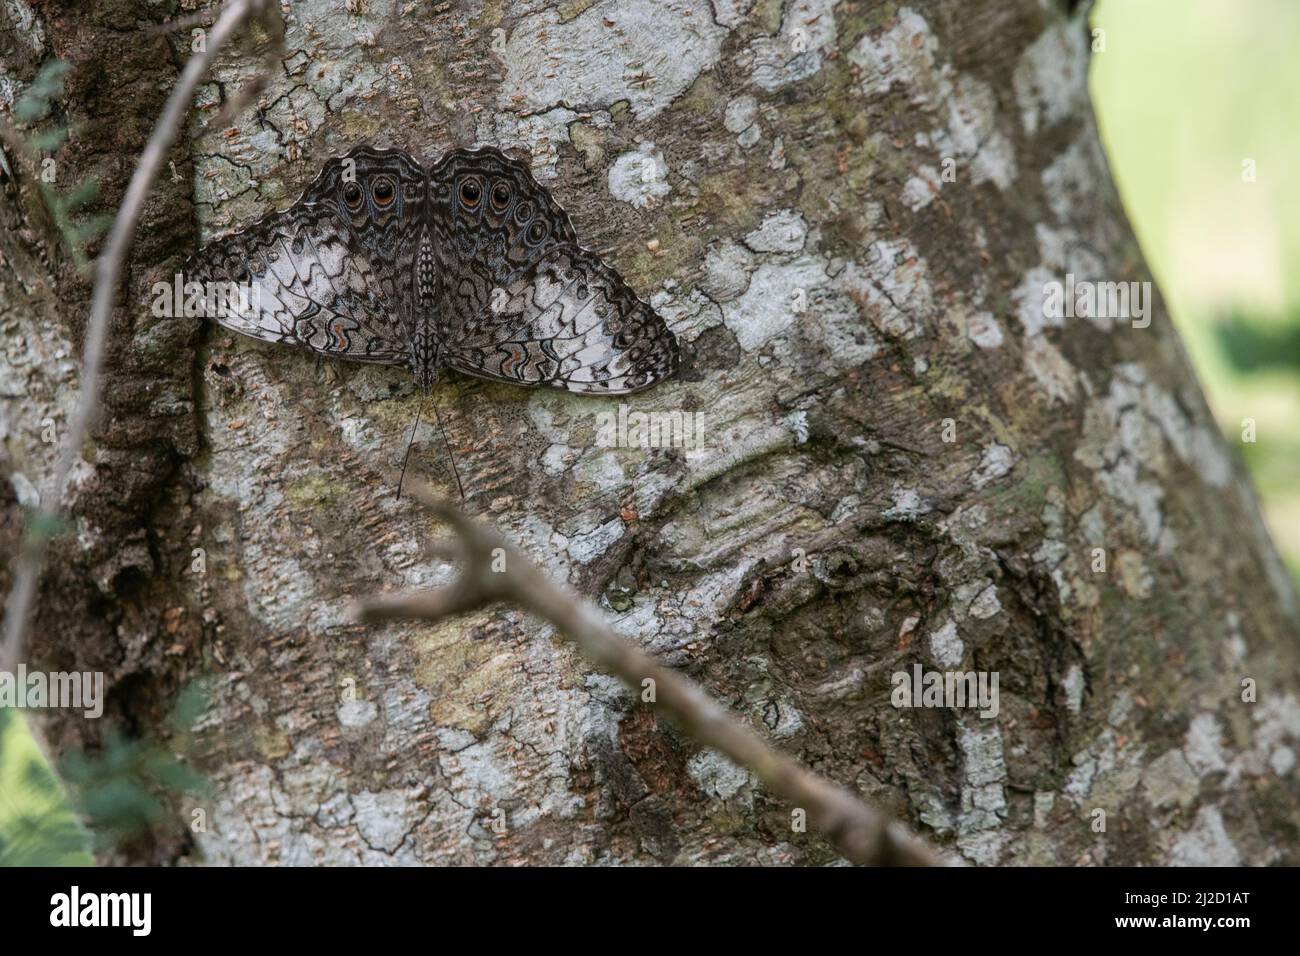 Der graue Cracker-Schmetterling (Hamadryas februa), seine störende Färbung hilft, ihn zu tarnen und versteckt auf einem Baumstamm im trockenen Wald Ecuadors zu halten. Stockfoto